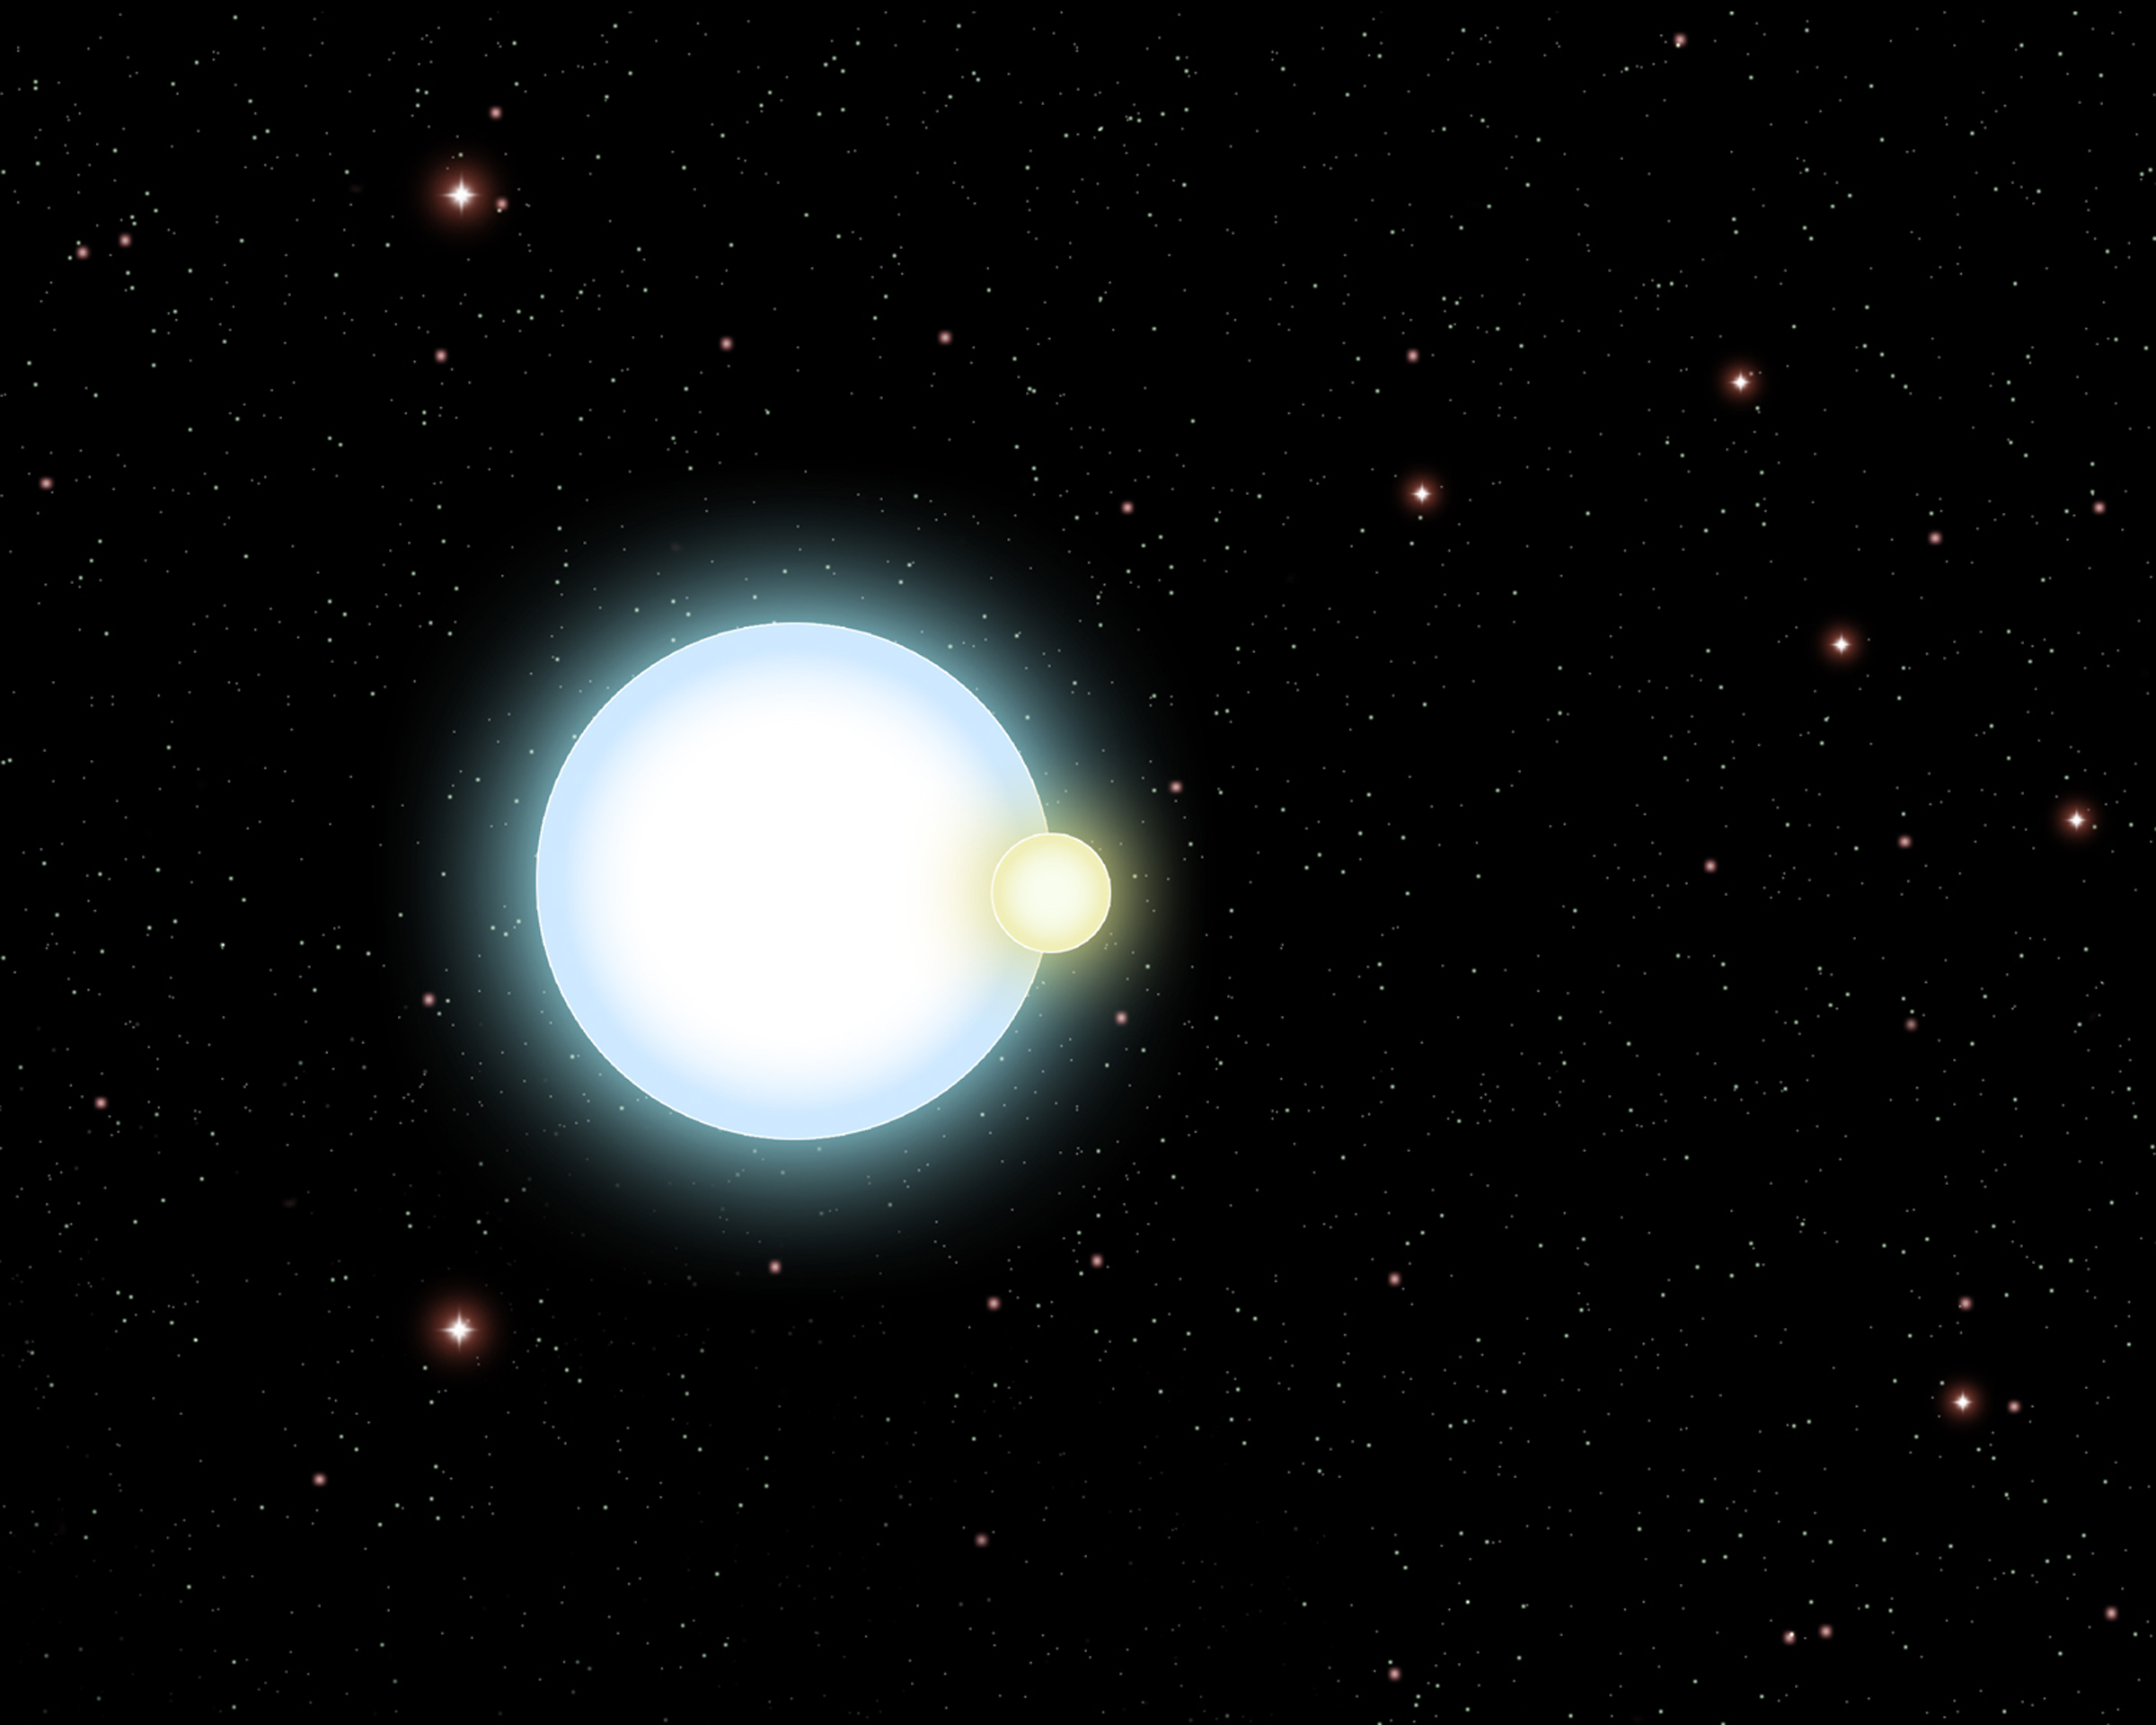 מערכת כוכב כפול לוקה בו שני החברים במערכת הם ננסים לבנים. איור: אוניברסיטת קליפורניה בסטנה ברברה